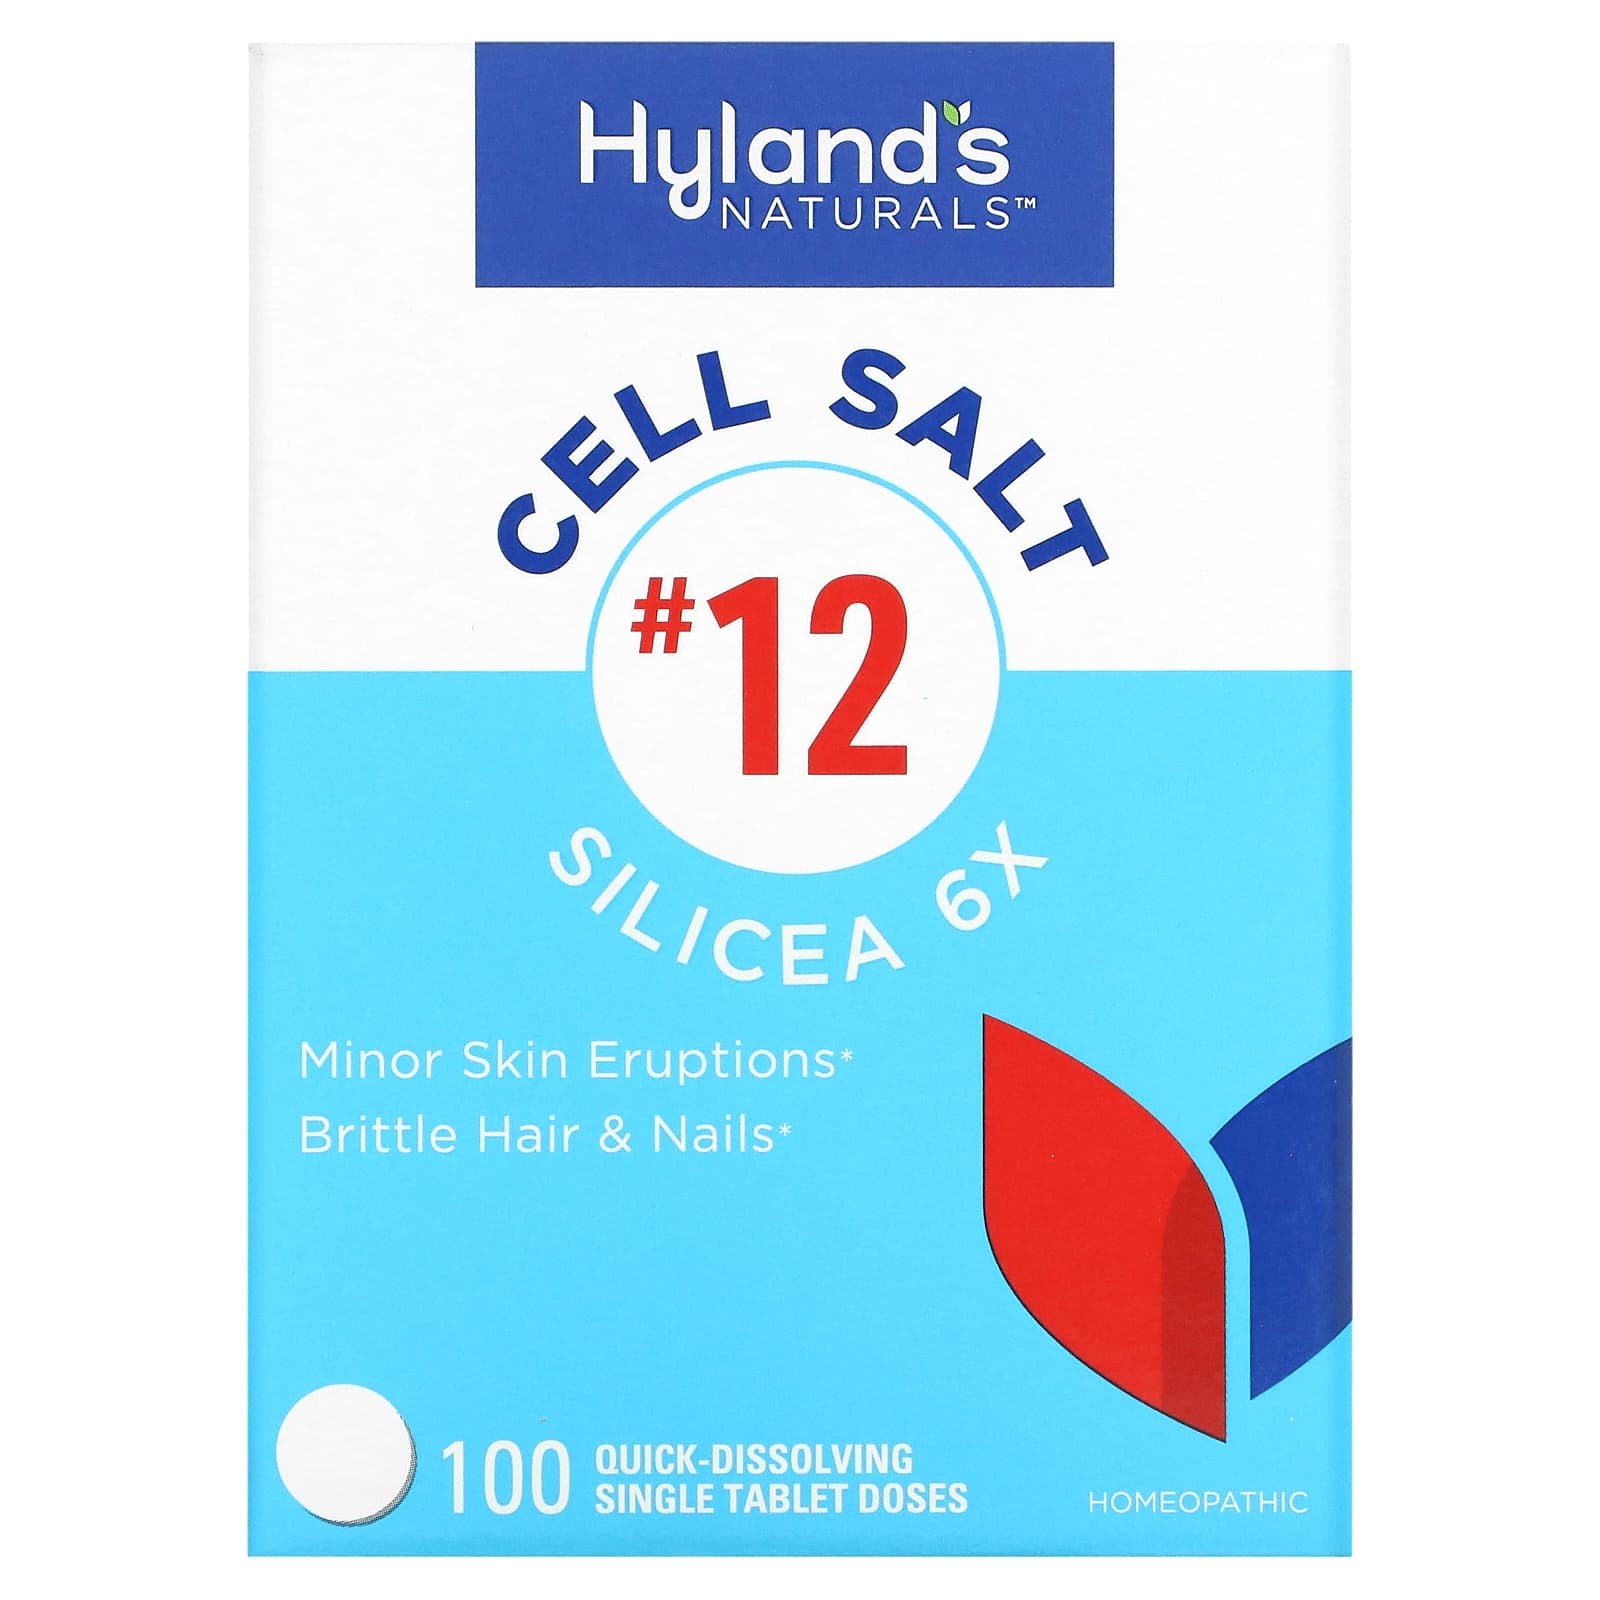 Клеточная Соль №12 / Силицея 6X Hyland's, 100 быстрорастворимых таблеток клеточная соль 6 калий фосфат 6x hyland s 100 быстрорастворимых таблеток